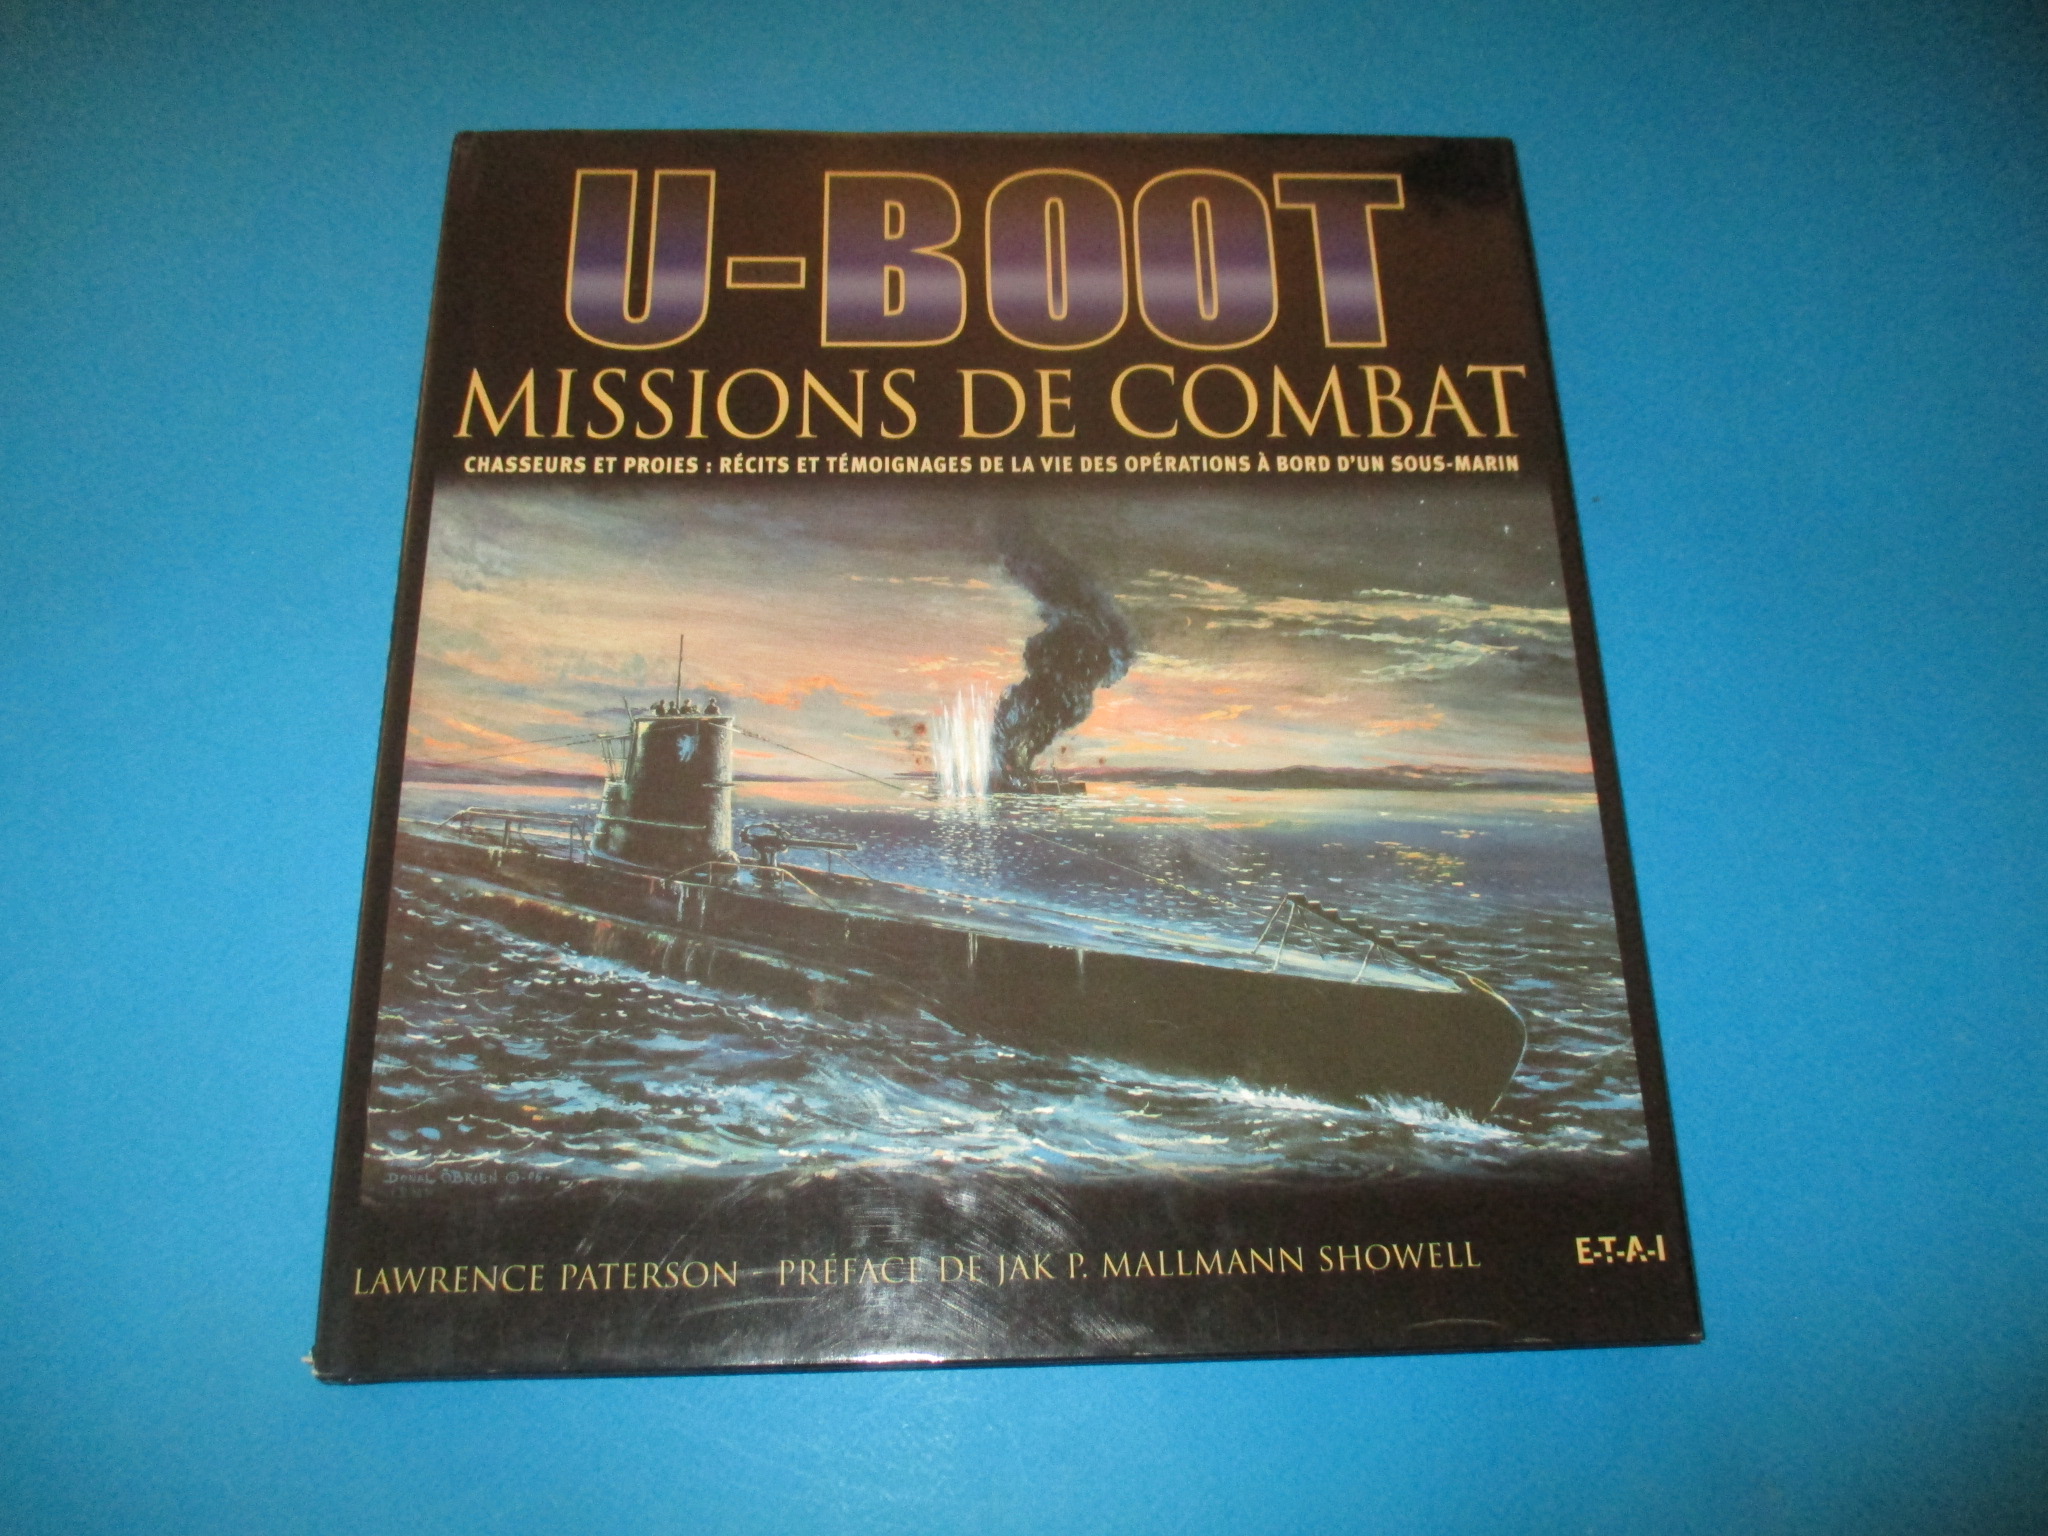 U-Boot Missions de Combat, Chasseurs et proies : récits et témoignages de la vie des opérations à bord d\'un sous-marin, Lawrence Paterson, E-T-A-I